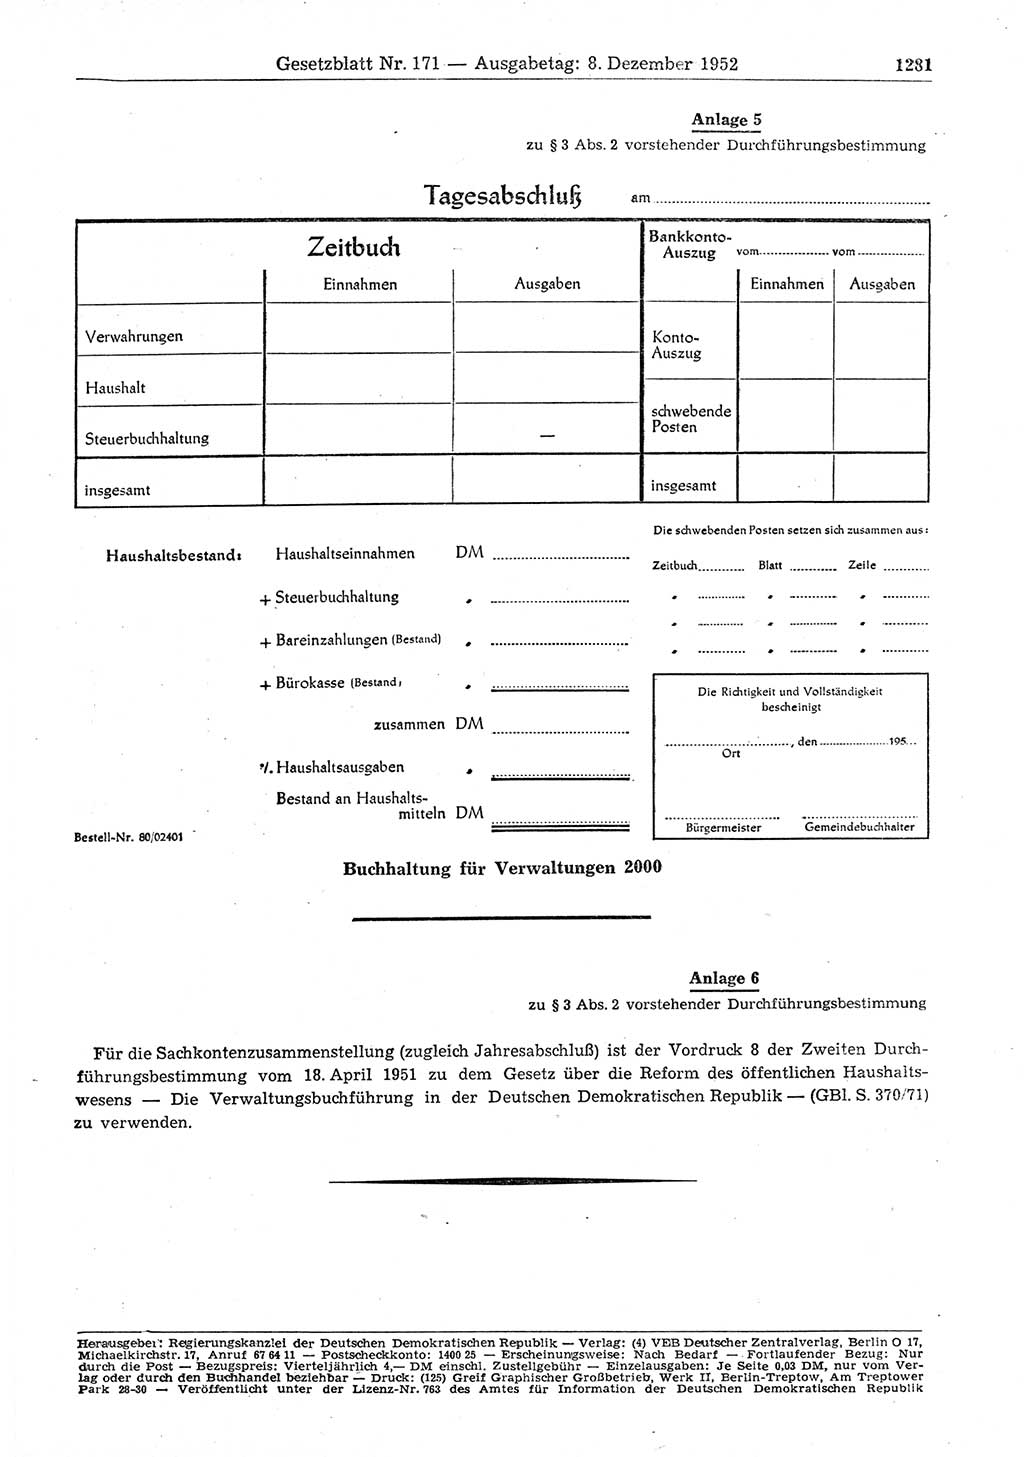 Gesetzblatt (GBl.) der Deutschen Demokratischen Republik (DDR) 1952, Seite 1281 (GBl. DDR 1952, S. 1281)